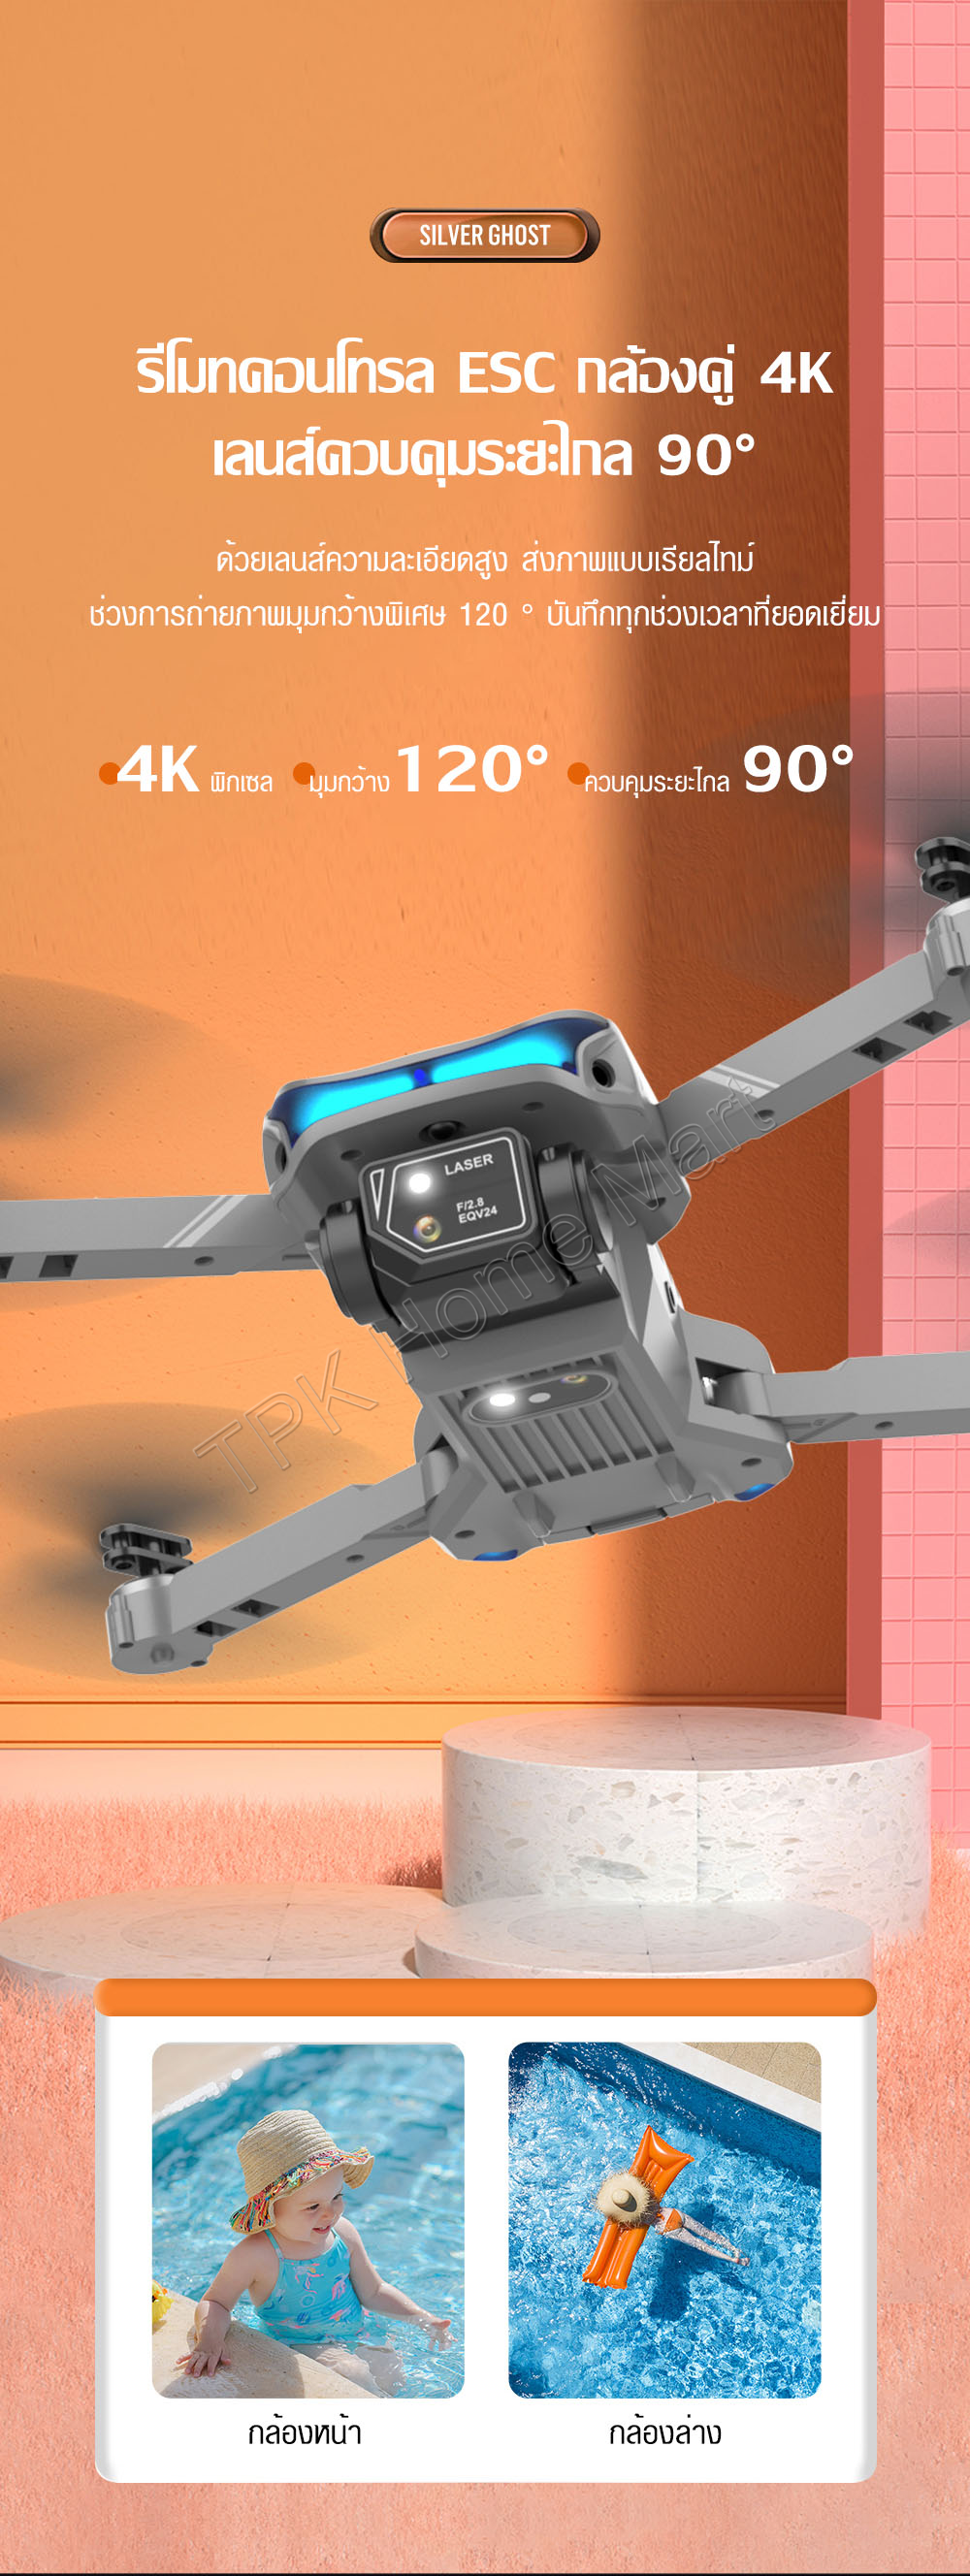 รูปภาพรายละเอียดของ Drone RC โดรน XT9 กล้องคู่ HD โดรนถ่ายภาพทางอากาศ โดรนบังคับ